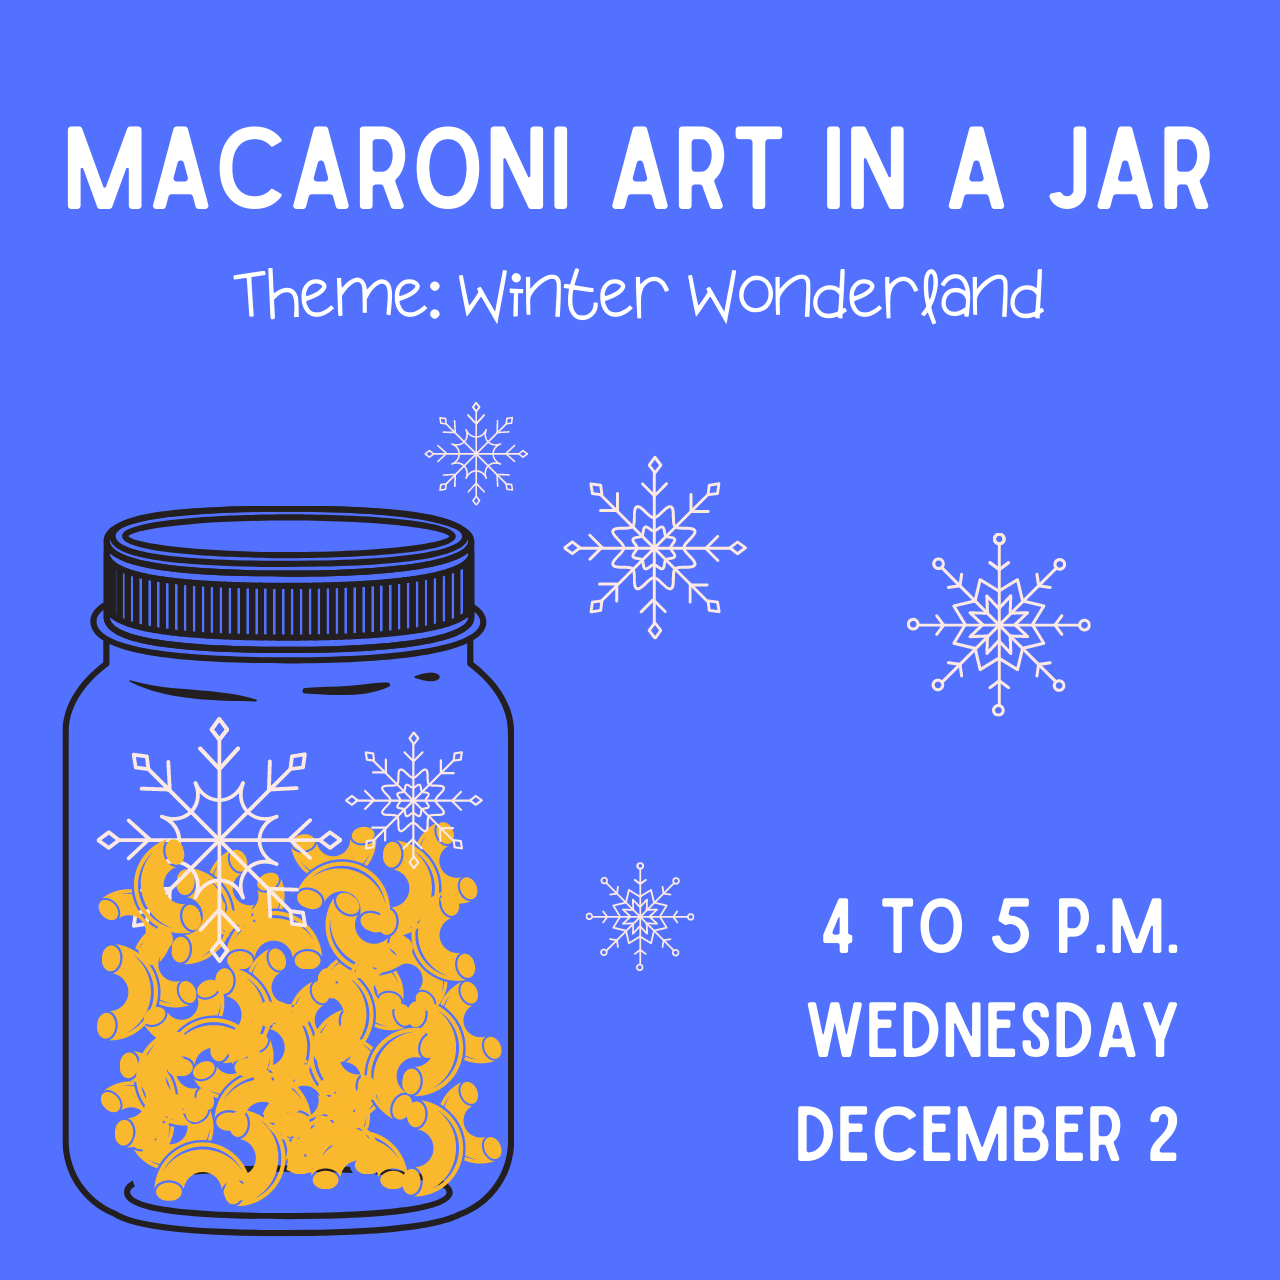 Macaroni Art in a Jar